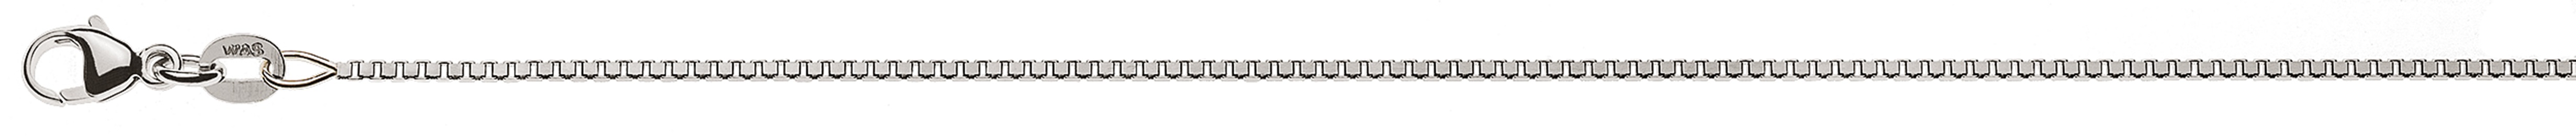 AURONOS Style Necklace white gold 9K Venetian chain diamond cut 38cm 1.1mm